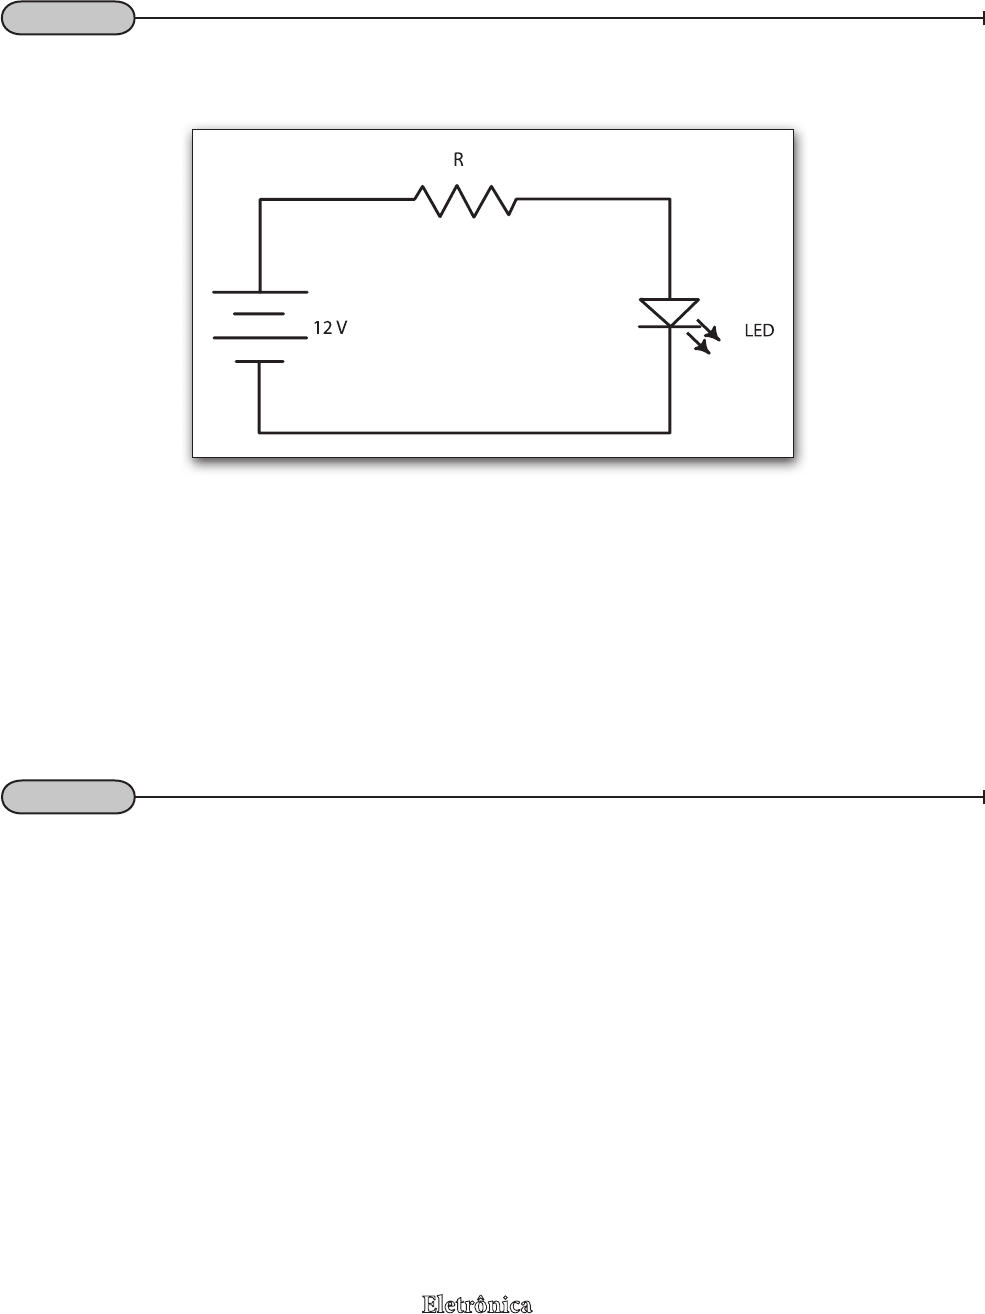 A FIGURA Q32.15 mostra a voltagem em função do tempo de um c